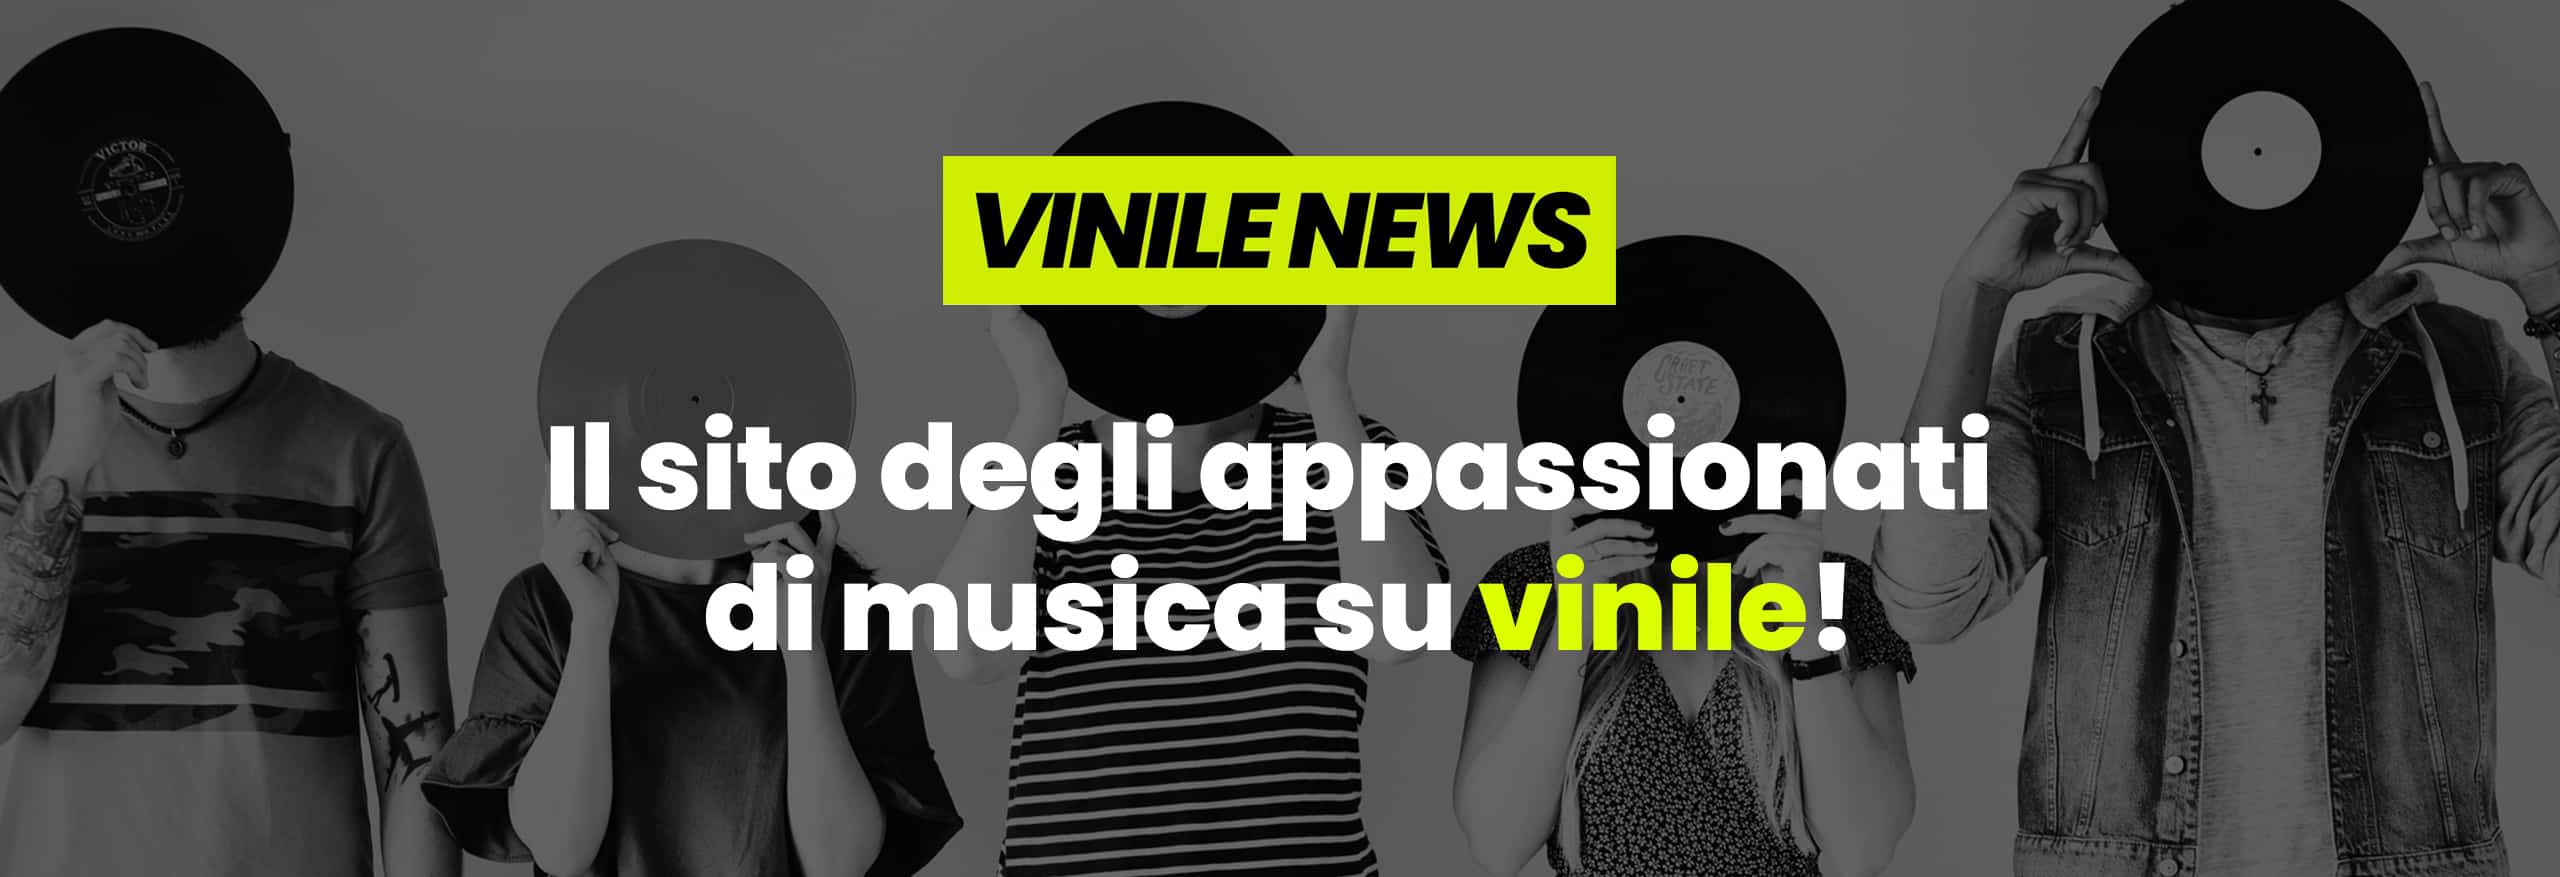 Vinile News - Preordina e Acquista Dischi in Vinile Online